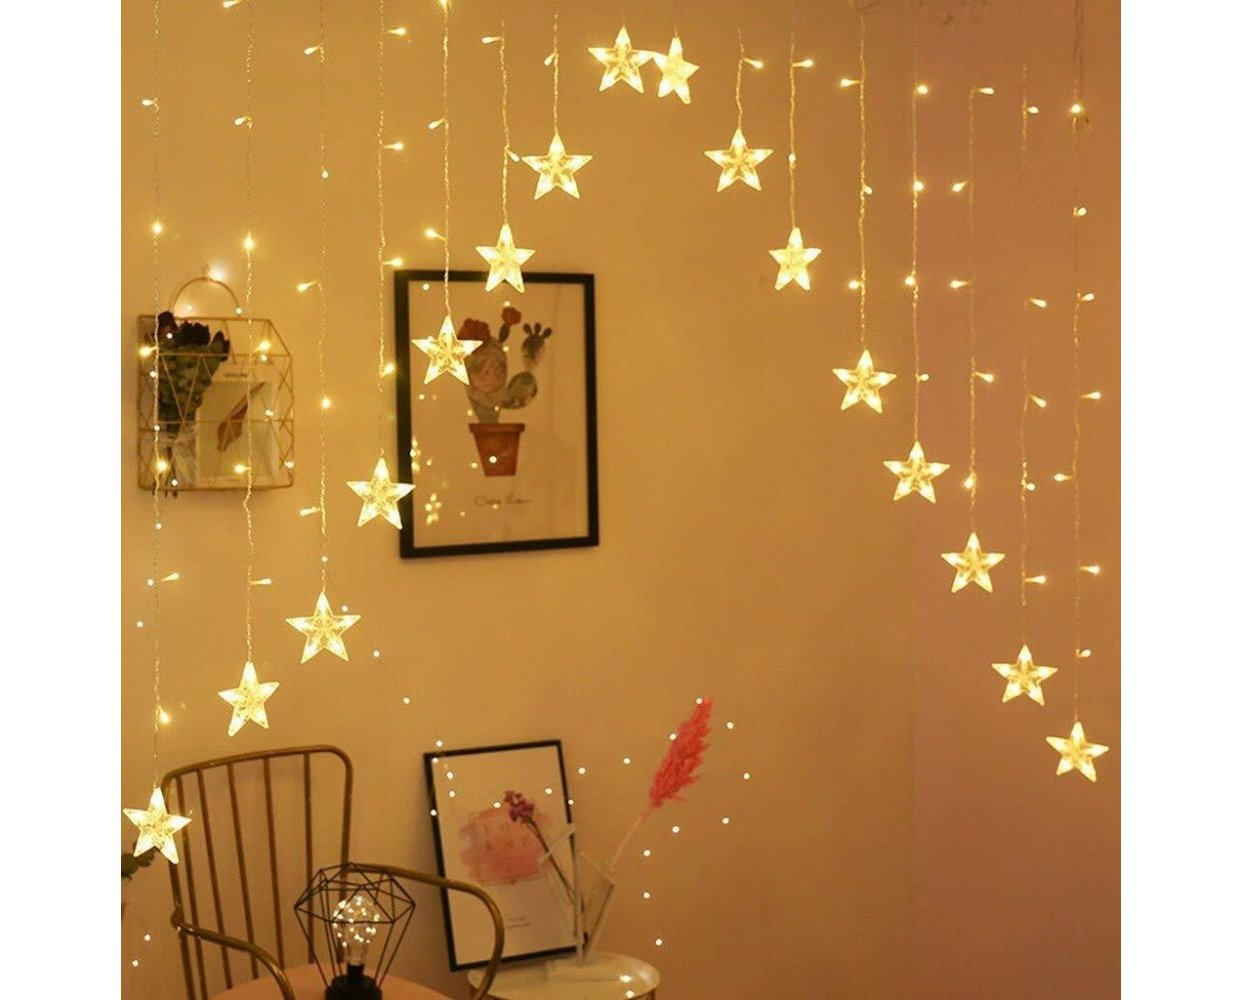 Χριστουγεννιάτικα Φωτάκια Κουρτίνα 3 x 0.80m Με Αστέρια LED Θερμά με Επέκταση ΟΕΜ B220